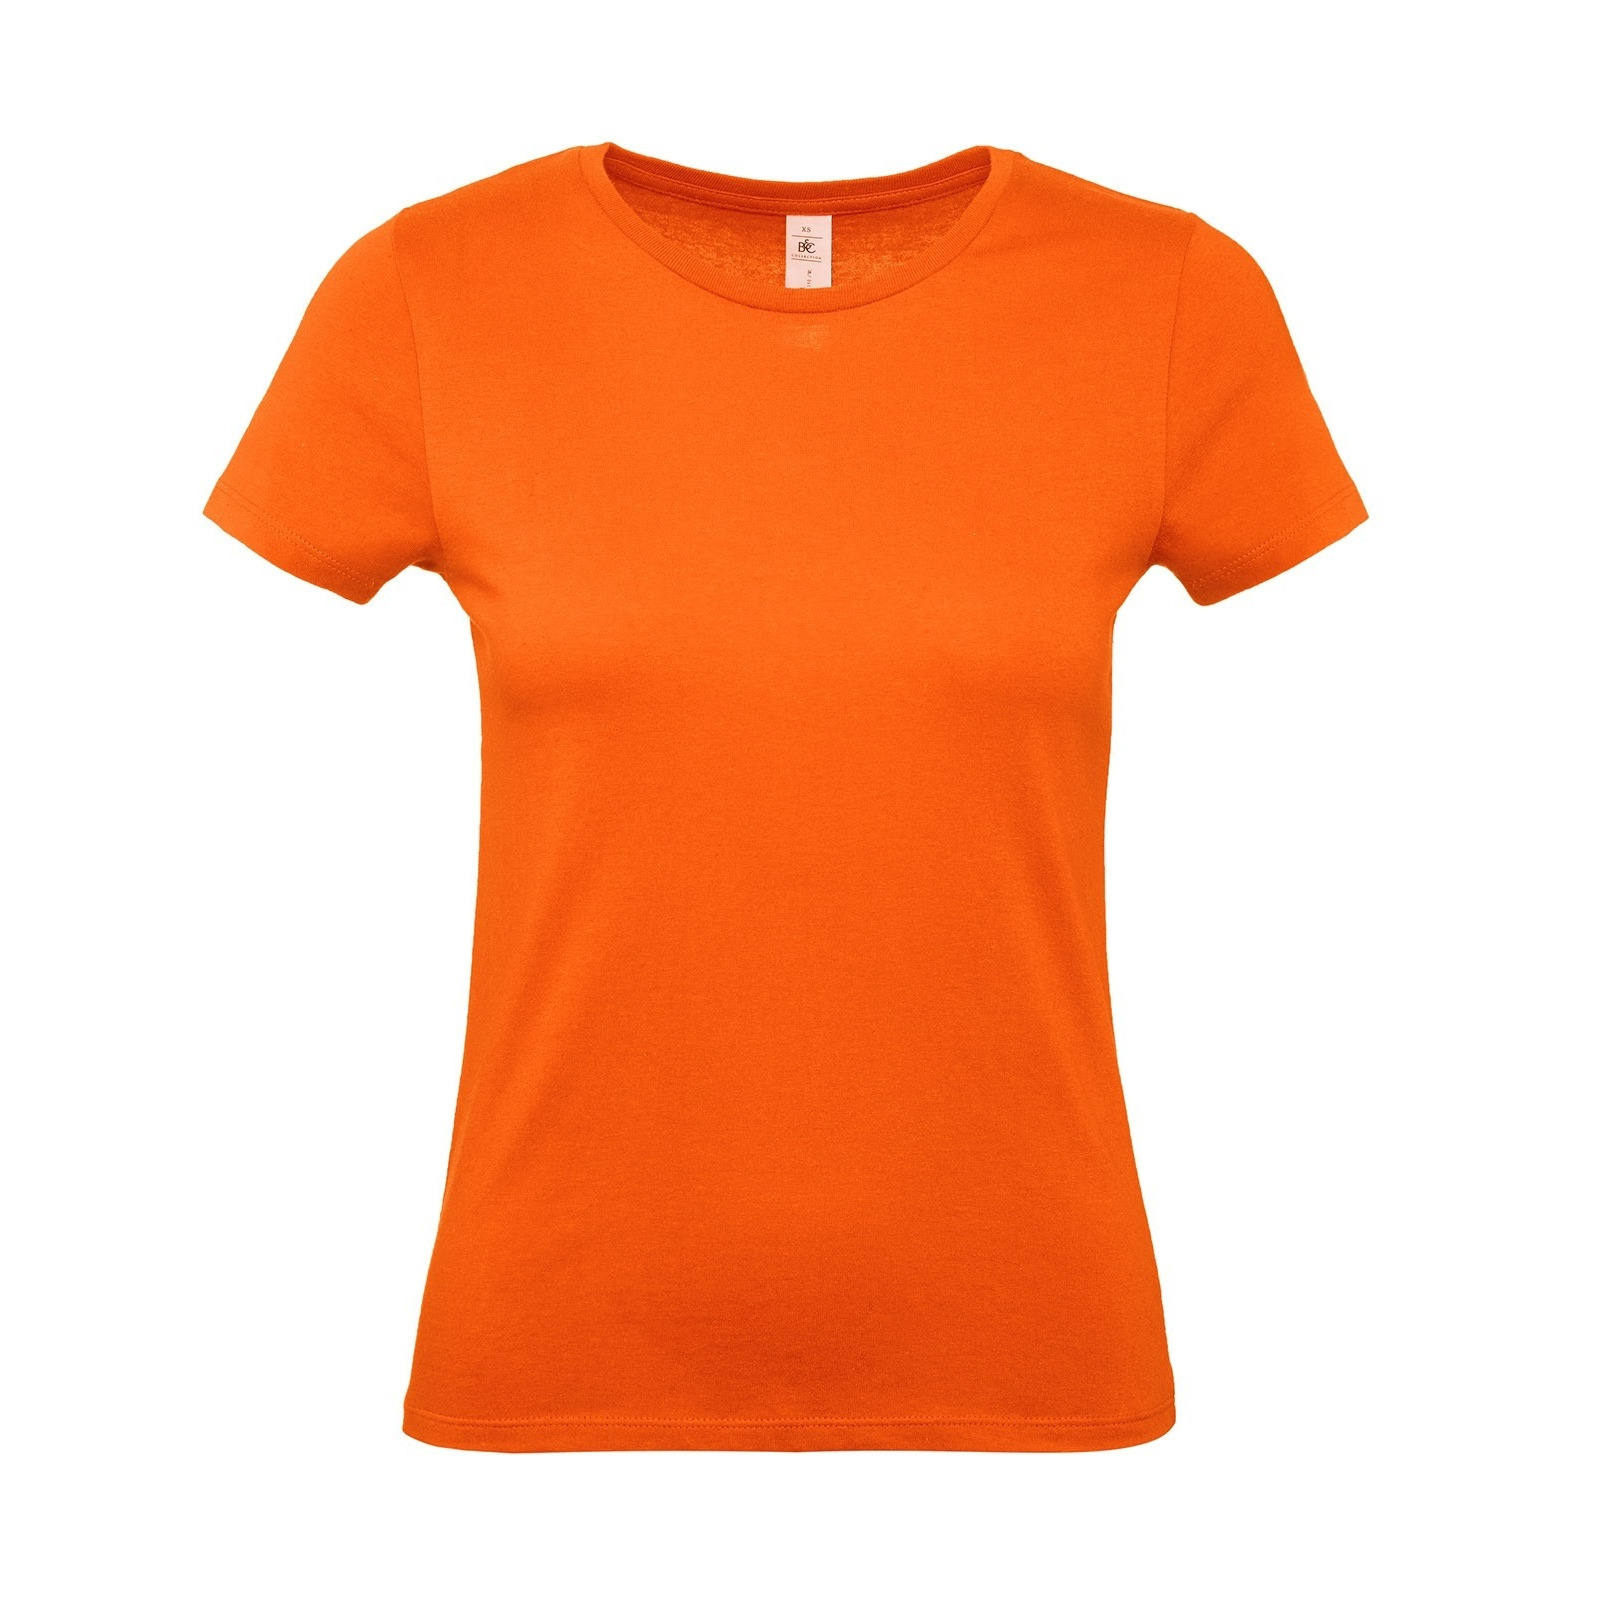 Set van 3x stuks oranje Koningsdag of supporter t-shirts met ronde hals voor dames, maat: S (36)